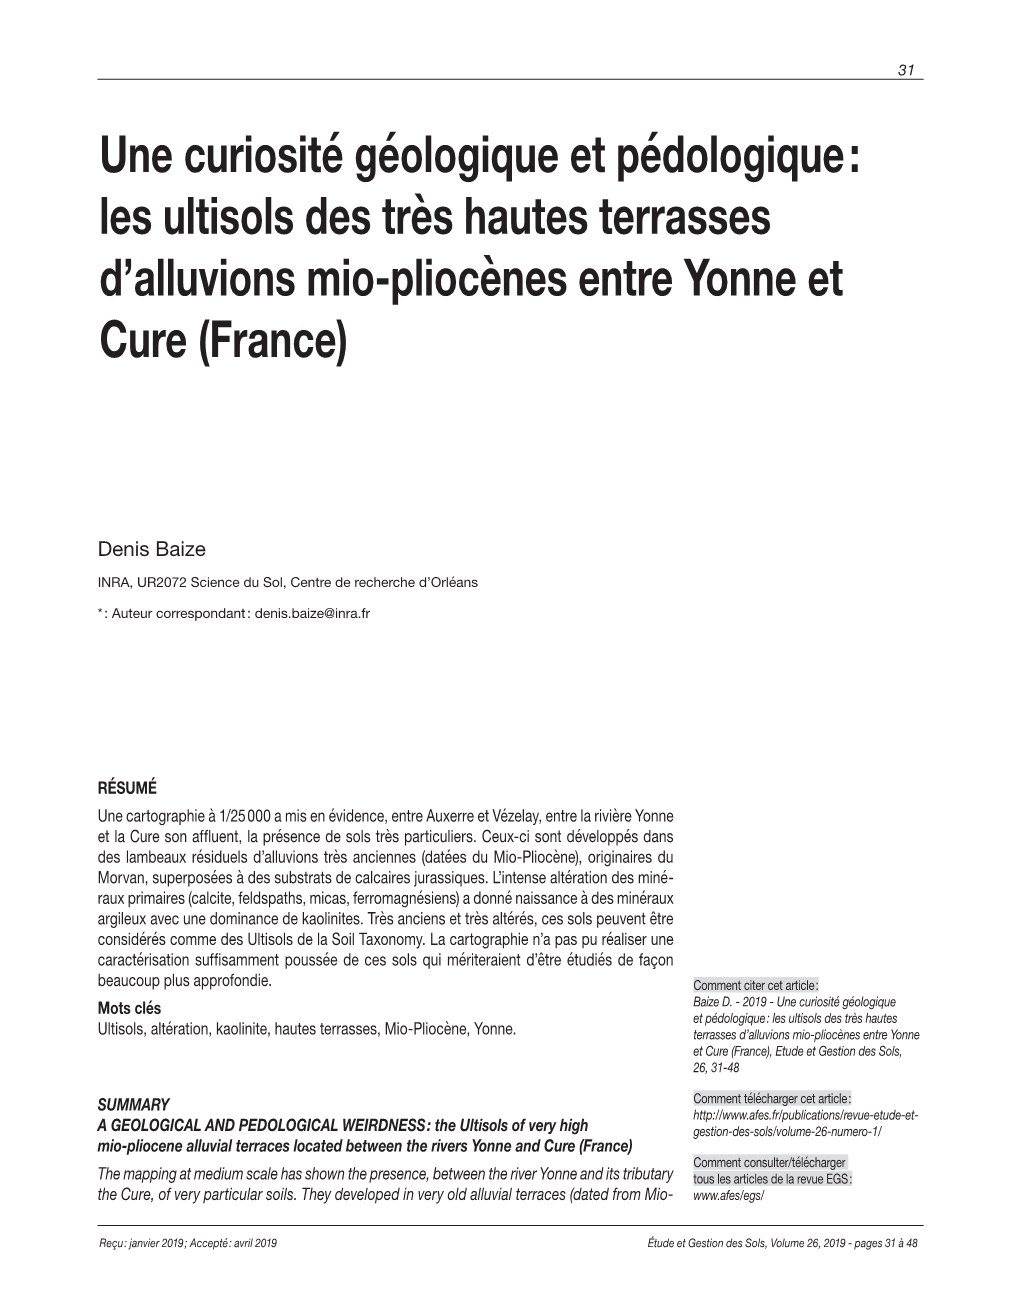 Une Curiosité Géologique Et Pédologique : Les Ultisols Des Très Hautes Terrasses D’Alluvions Mio-Pliocènes Entre Yonne Et Cure (France)